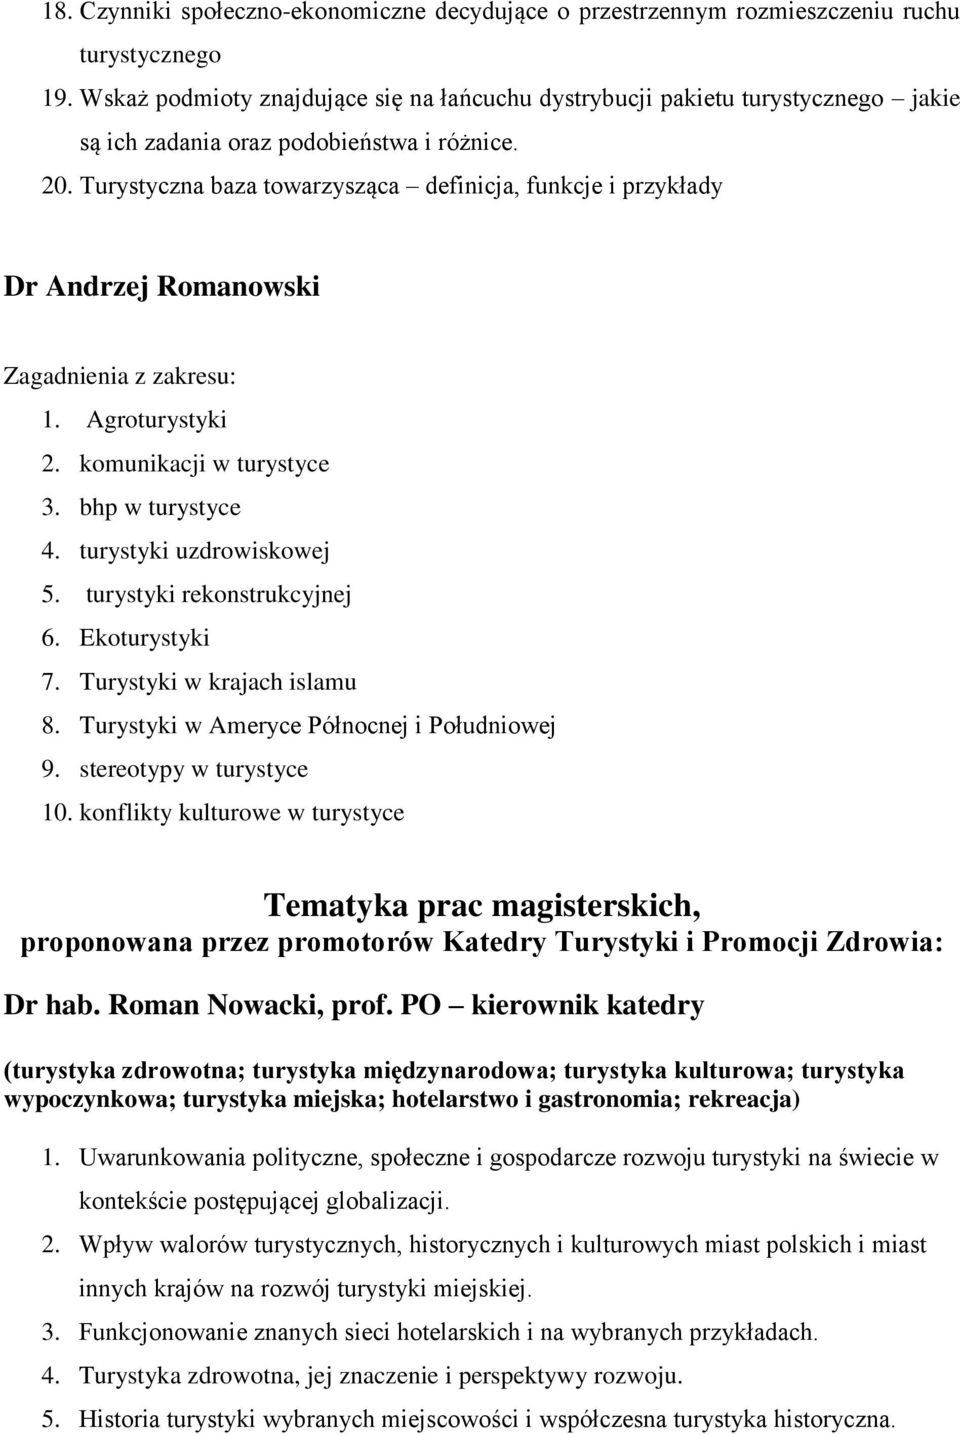 Turystyczna baza towarzysząca definicja, funkcje i przykłady Dr Andrzej Romanowski Zagadnienia z zakresu: 1. Agroturystyki 2. komunikacji w turystyce 3. bhp w turystyce 4. turystyki uzdrowiskowej 5.